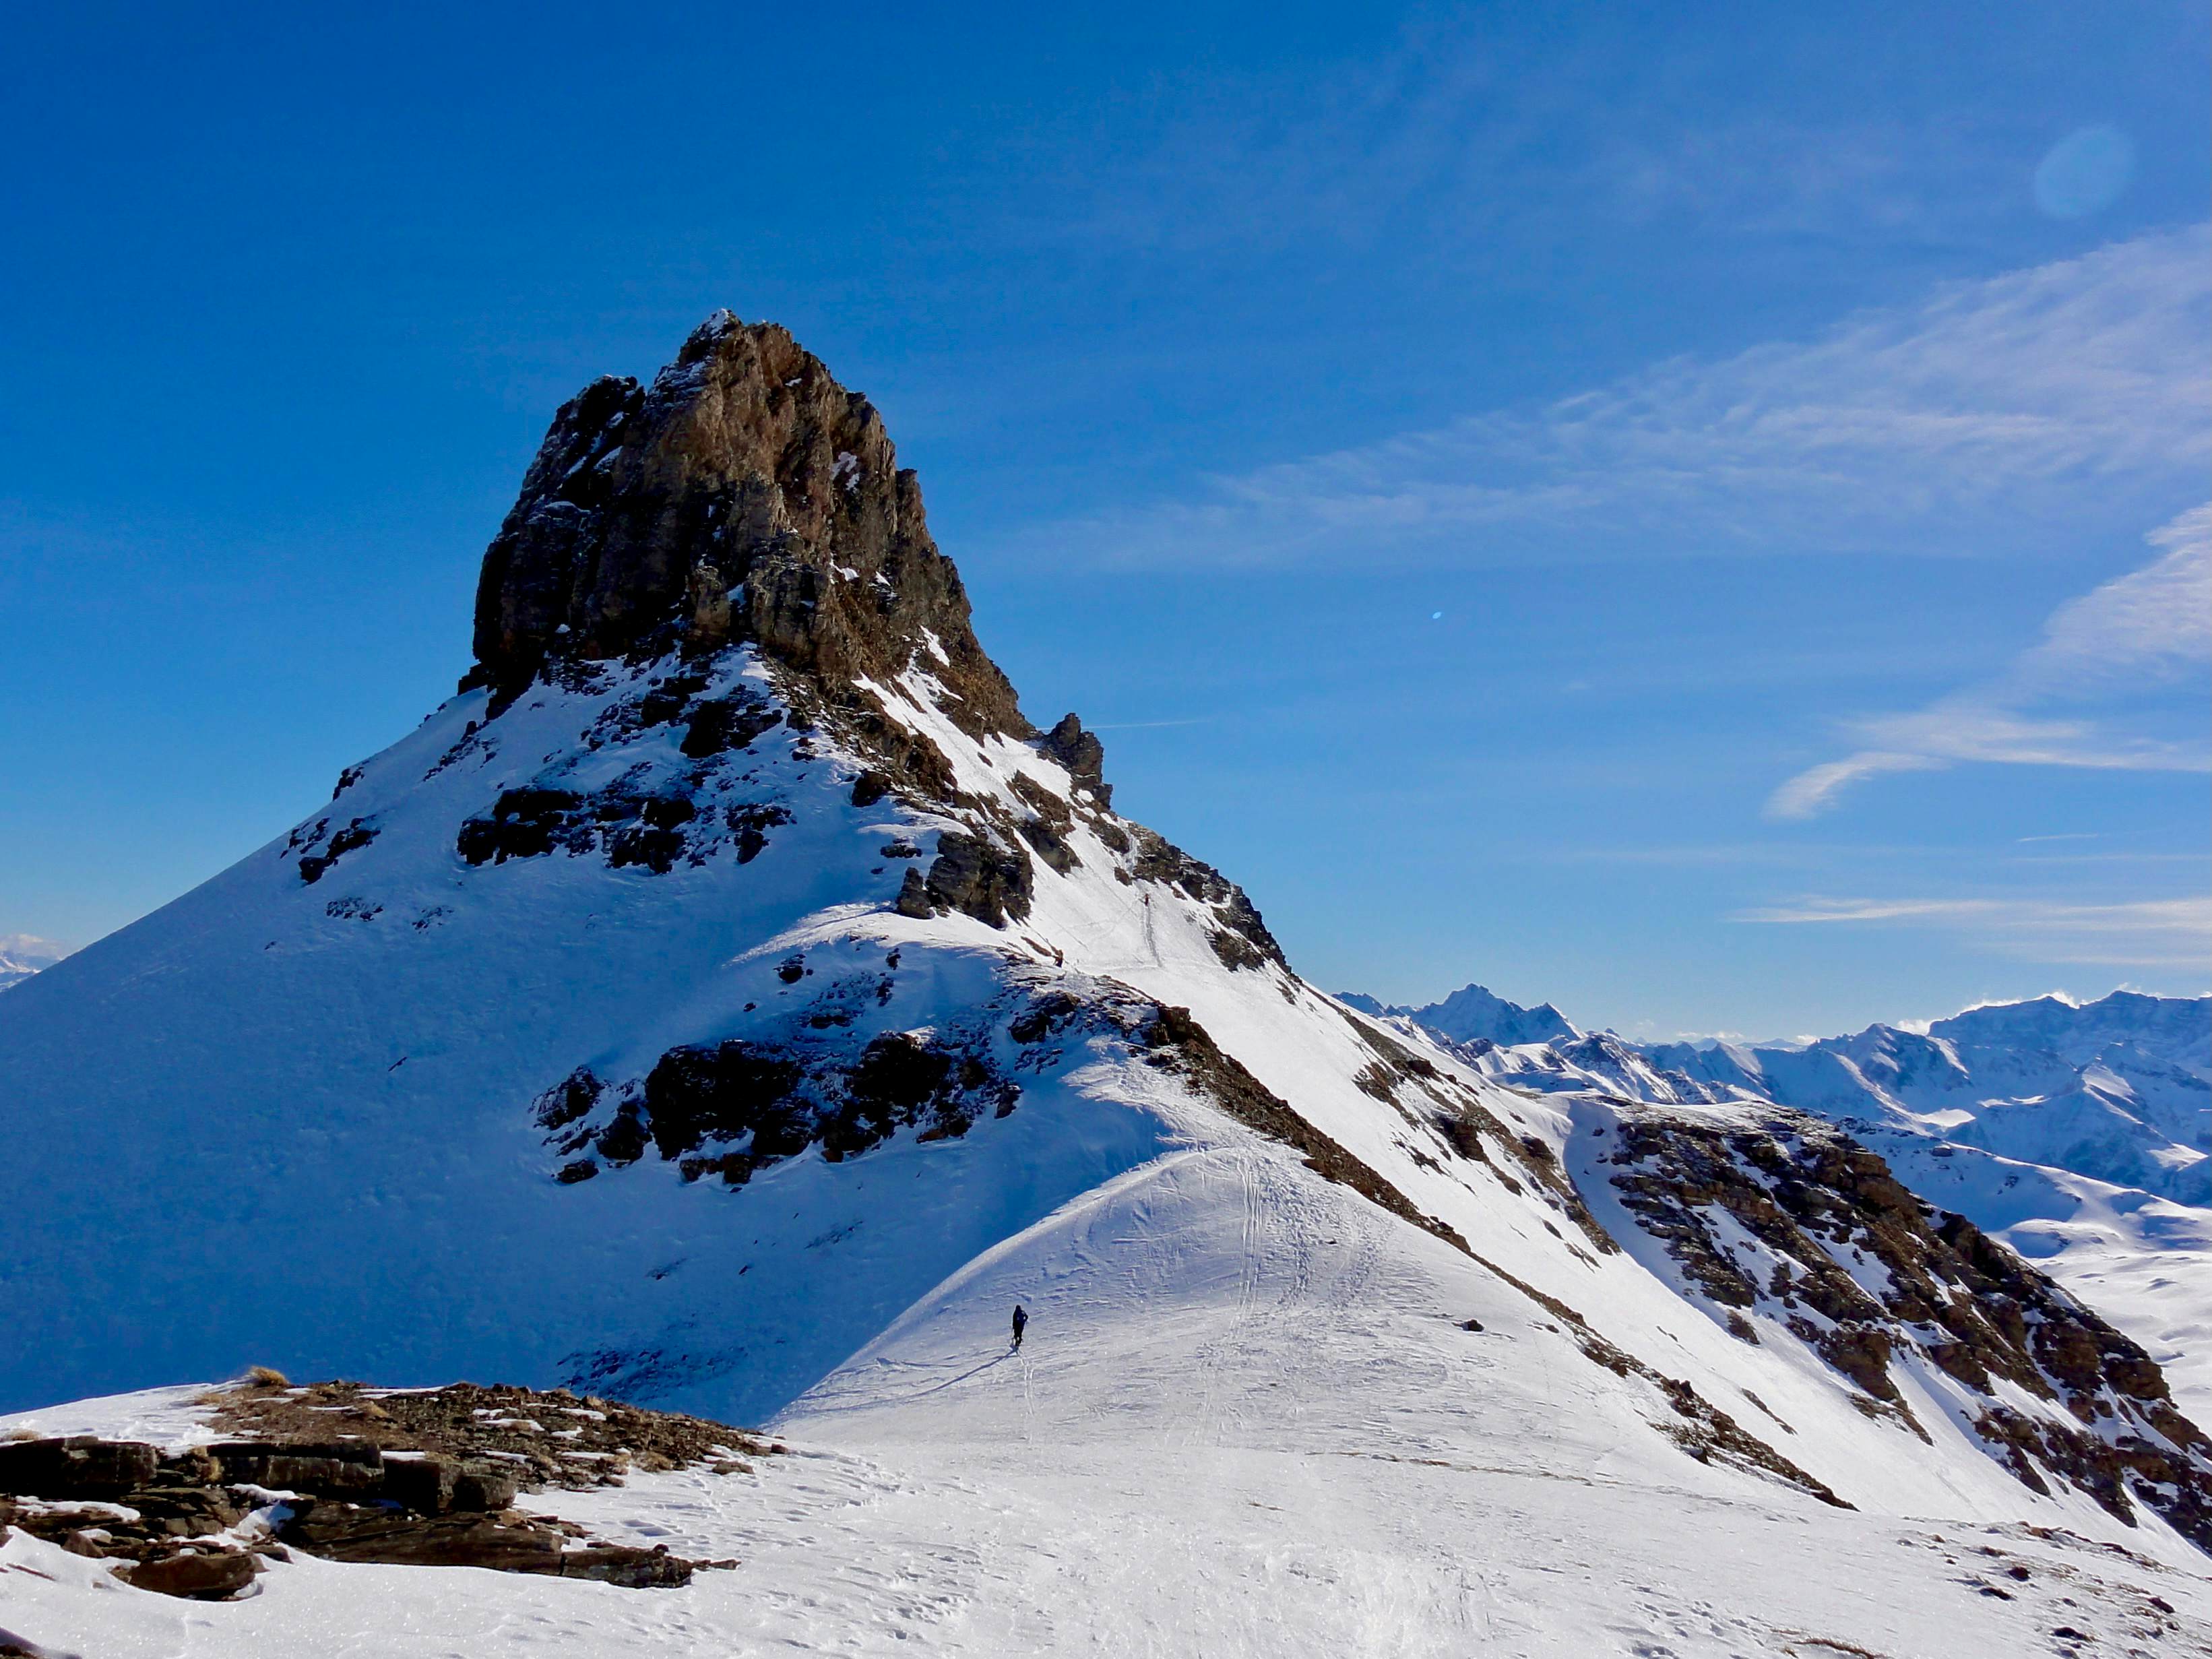 Spitzmeilen und Spitzmeilenfurggel. Rechts des Gipfels ist die Aufstiegsspur im Schnee zu erkennen